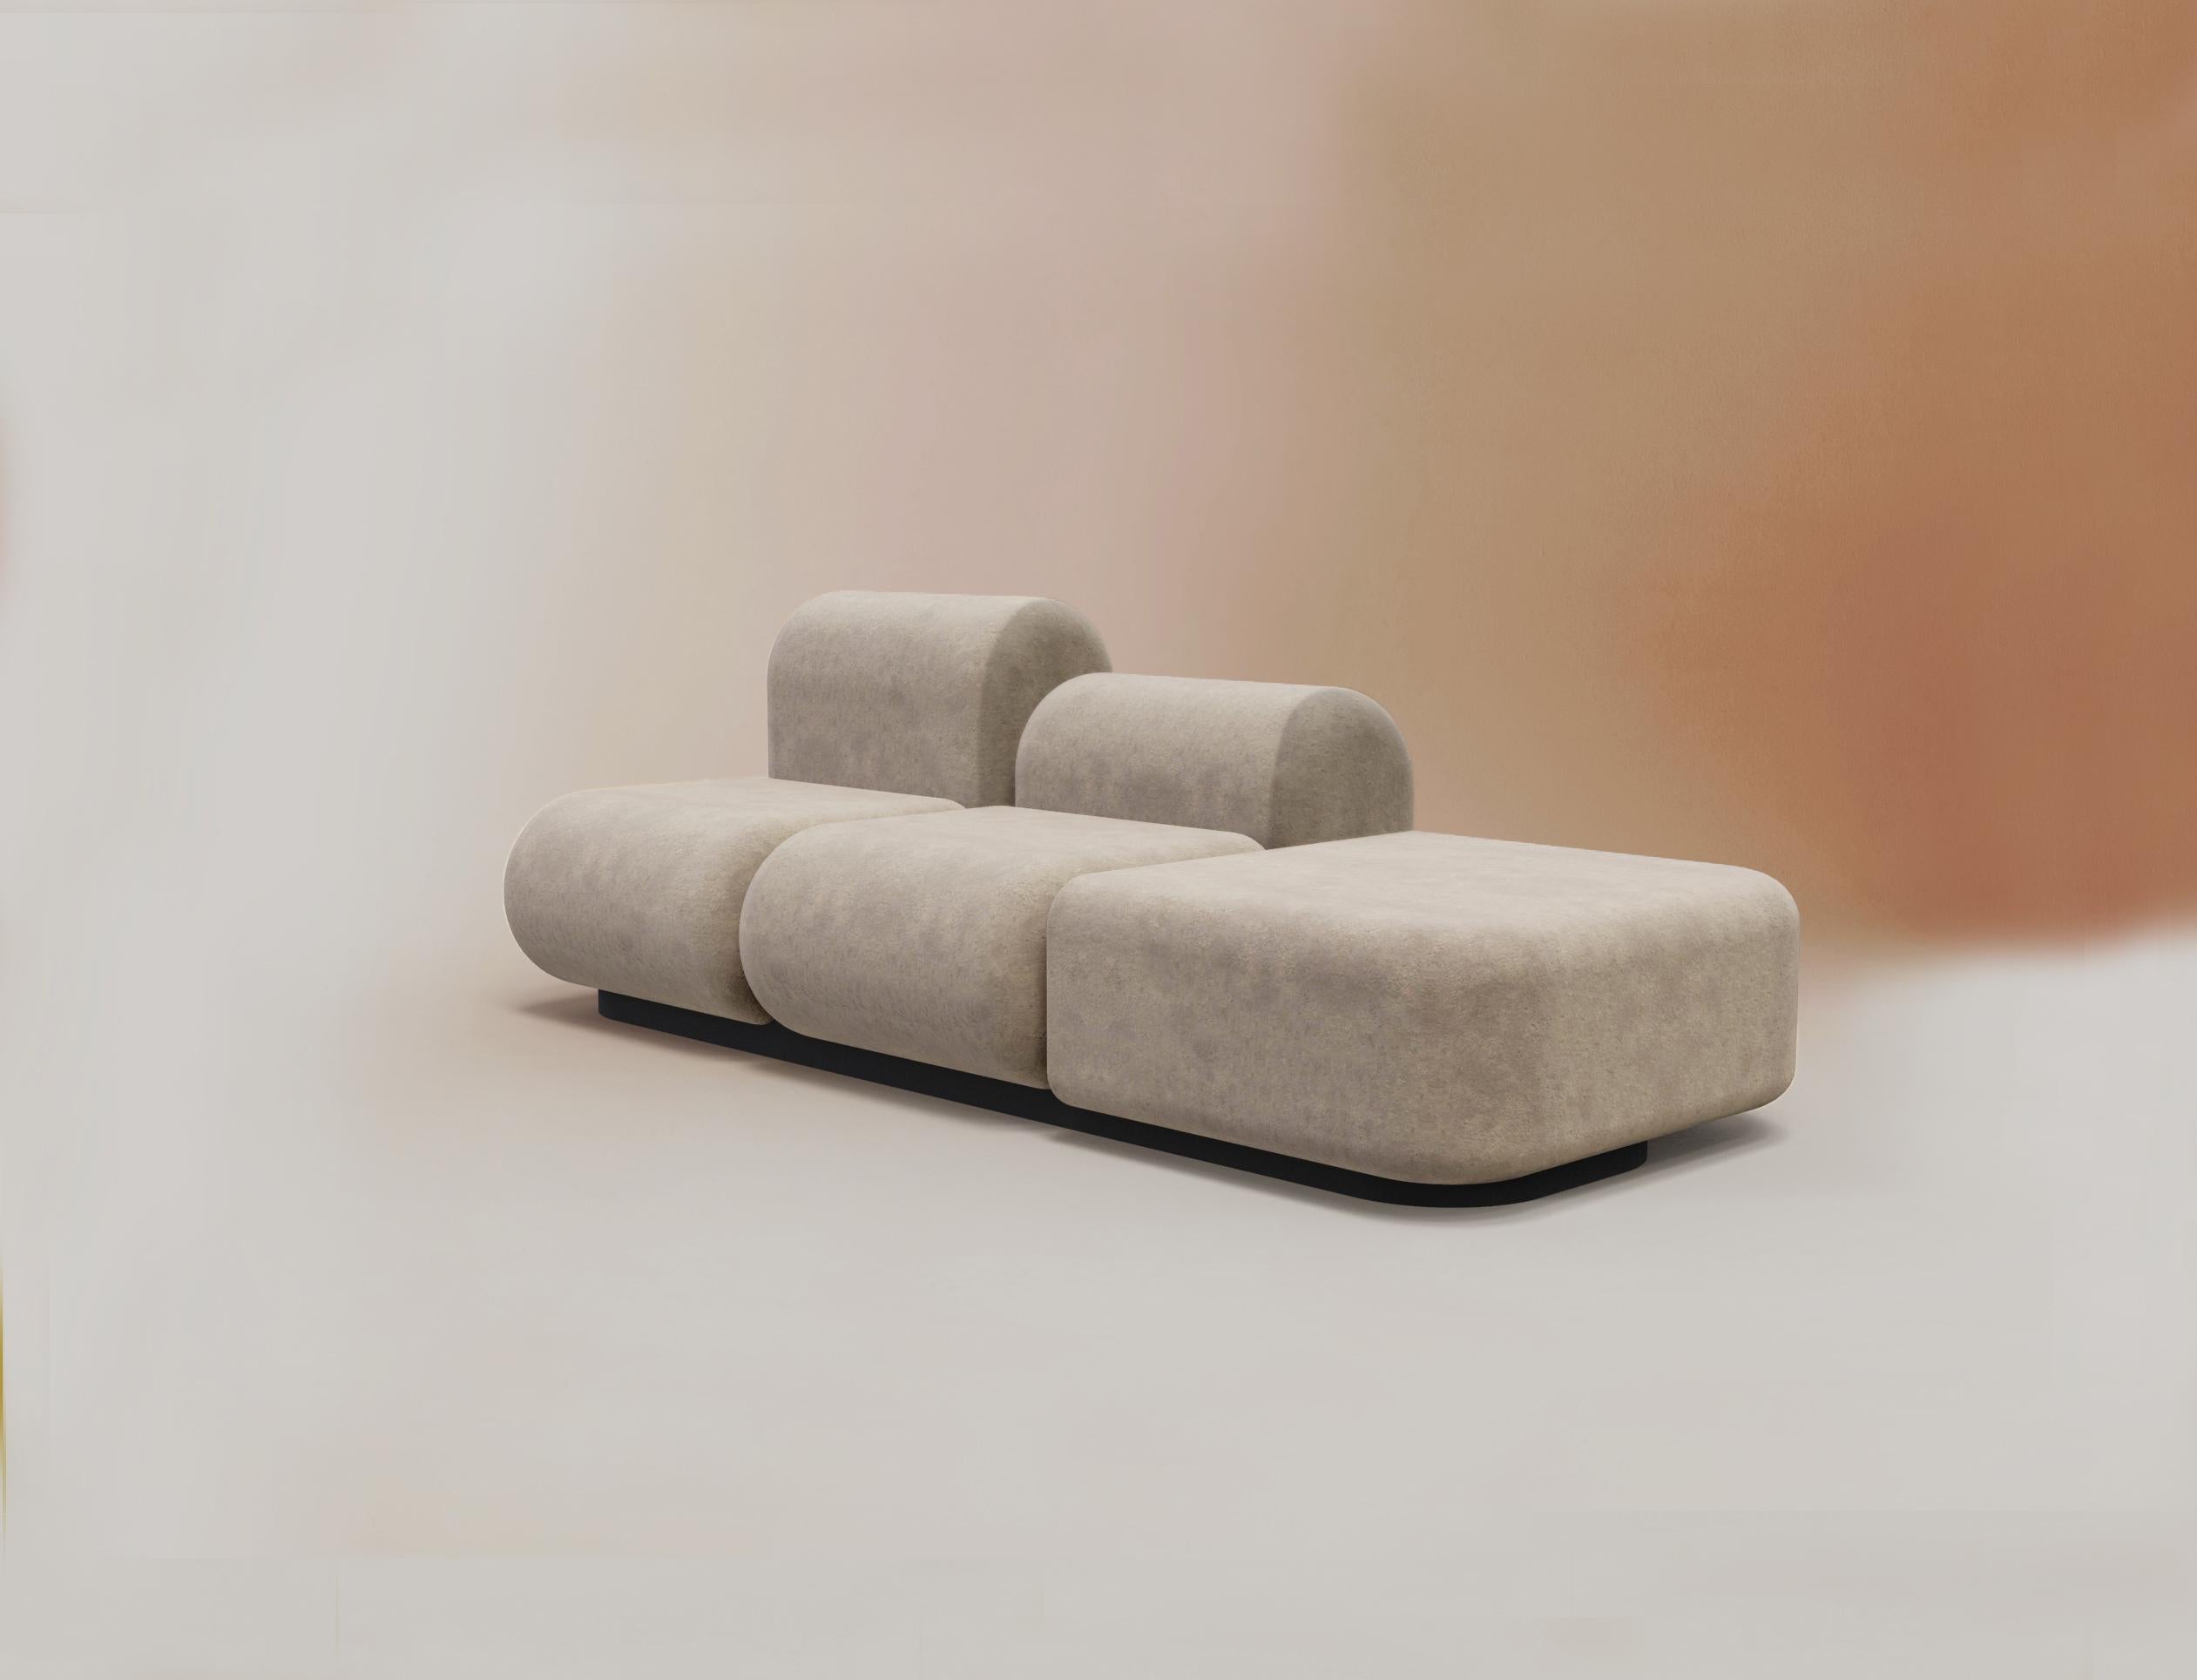 Unser Sofa Bob ist eines der neuesten Stücke der Collection'S. Zusätzlich zu seiner modularen Struktur, die es uns ermöglicht, ihn an jeden Raum anzupassen, hat er eine architektonische und glatte Form, die ihn zu einem vielseitigen und gleichzeitig